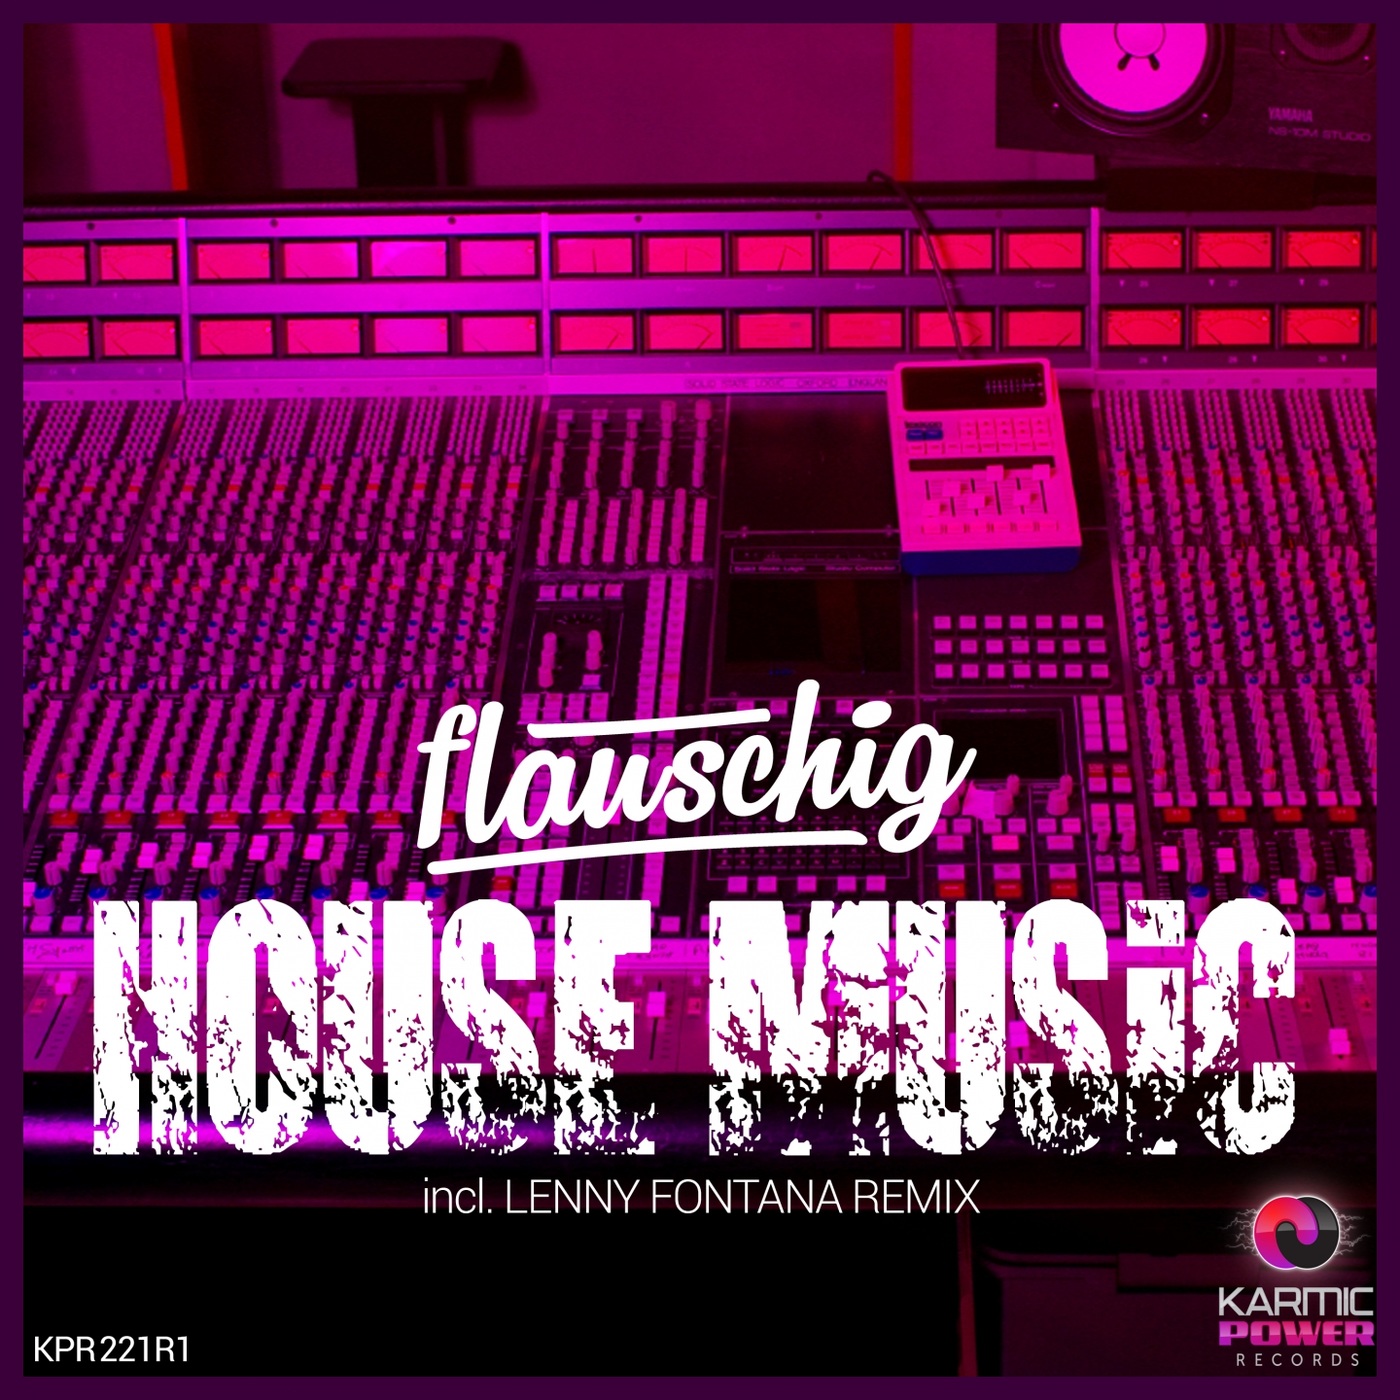 Flauschig - House Music (Remixes, Pt. 1) / Karmic Power Records